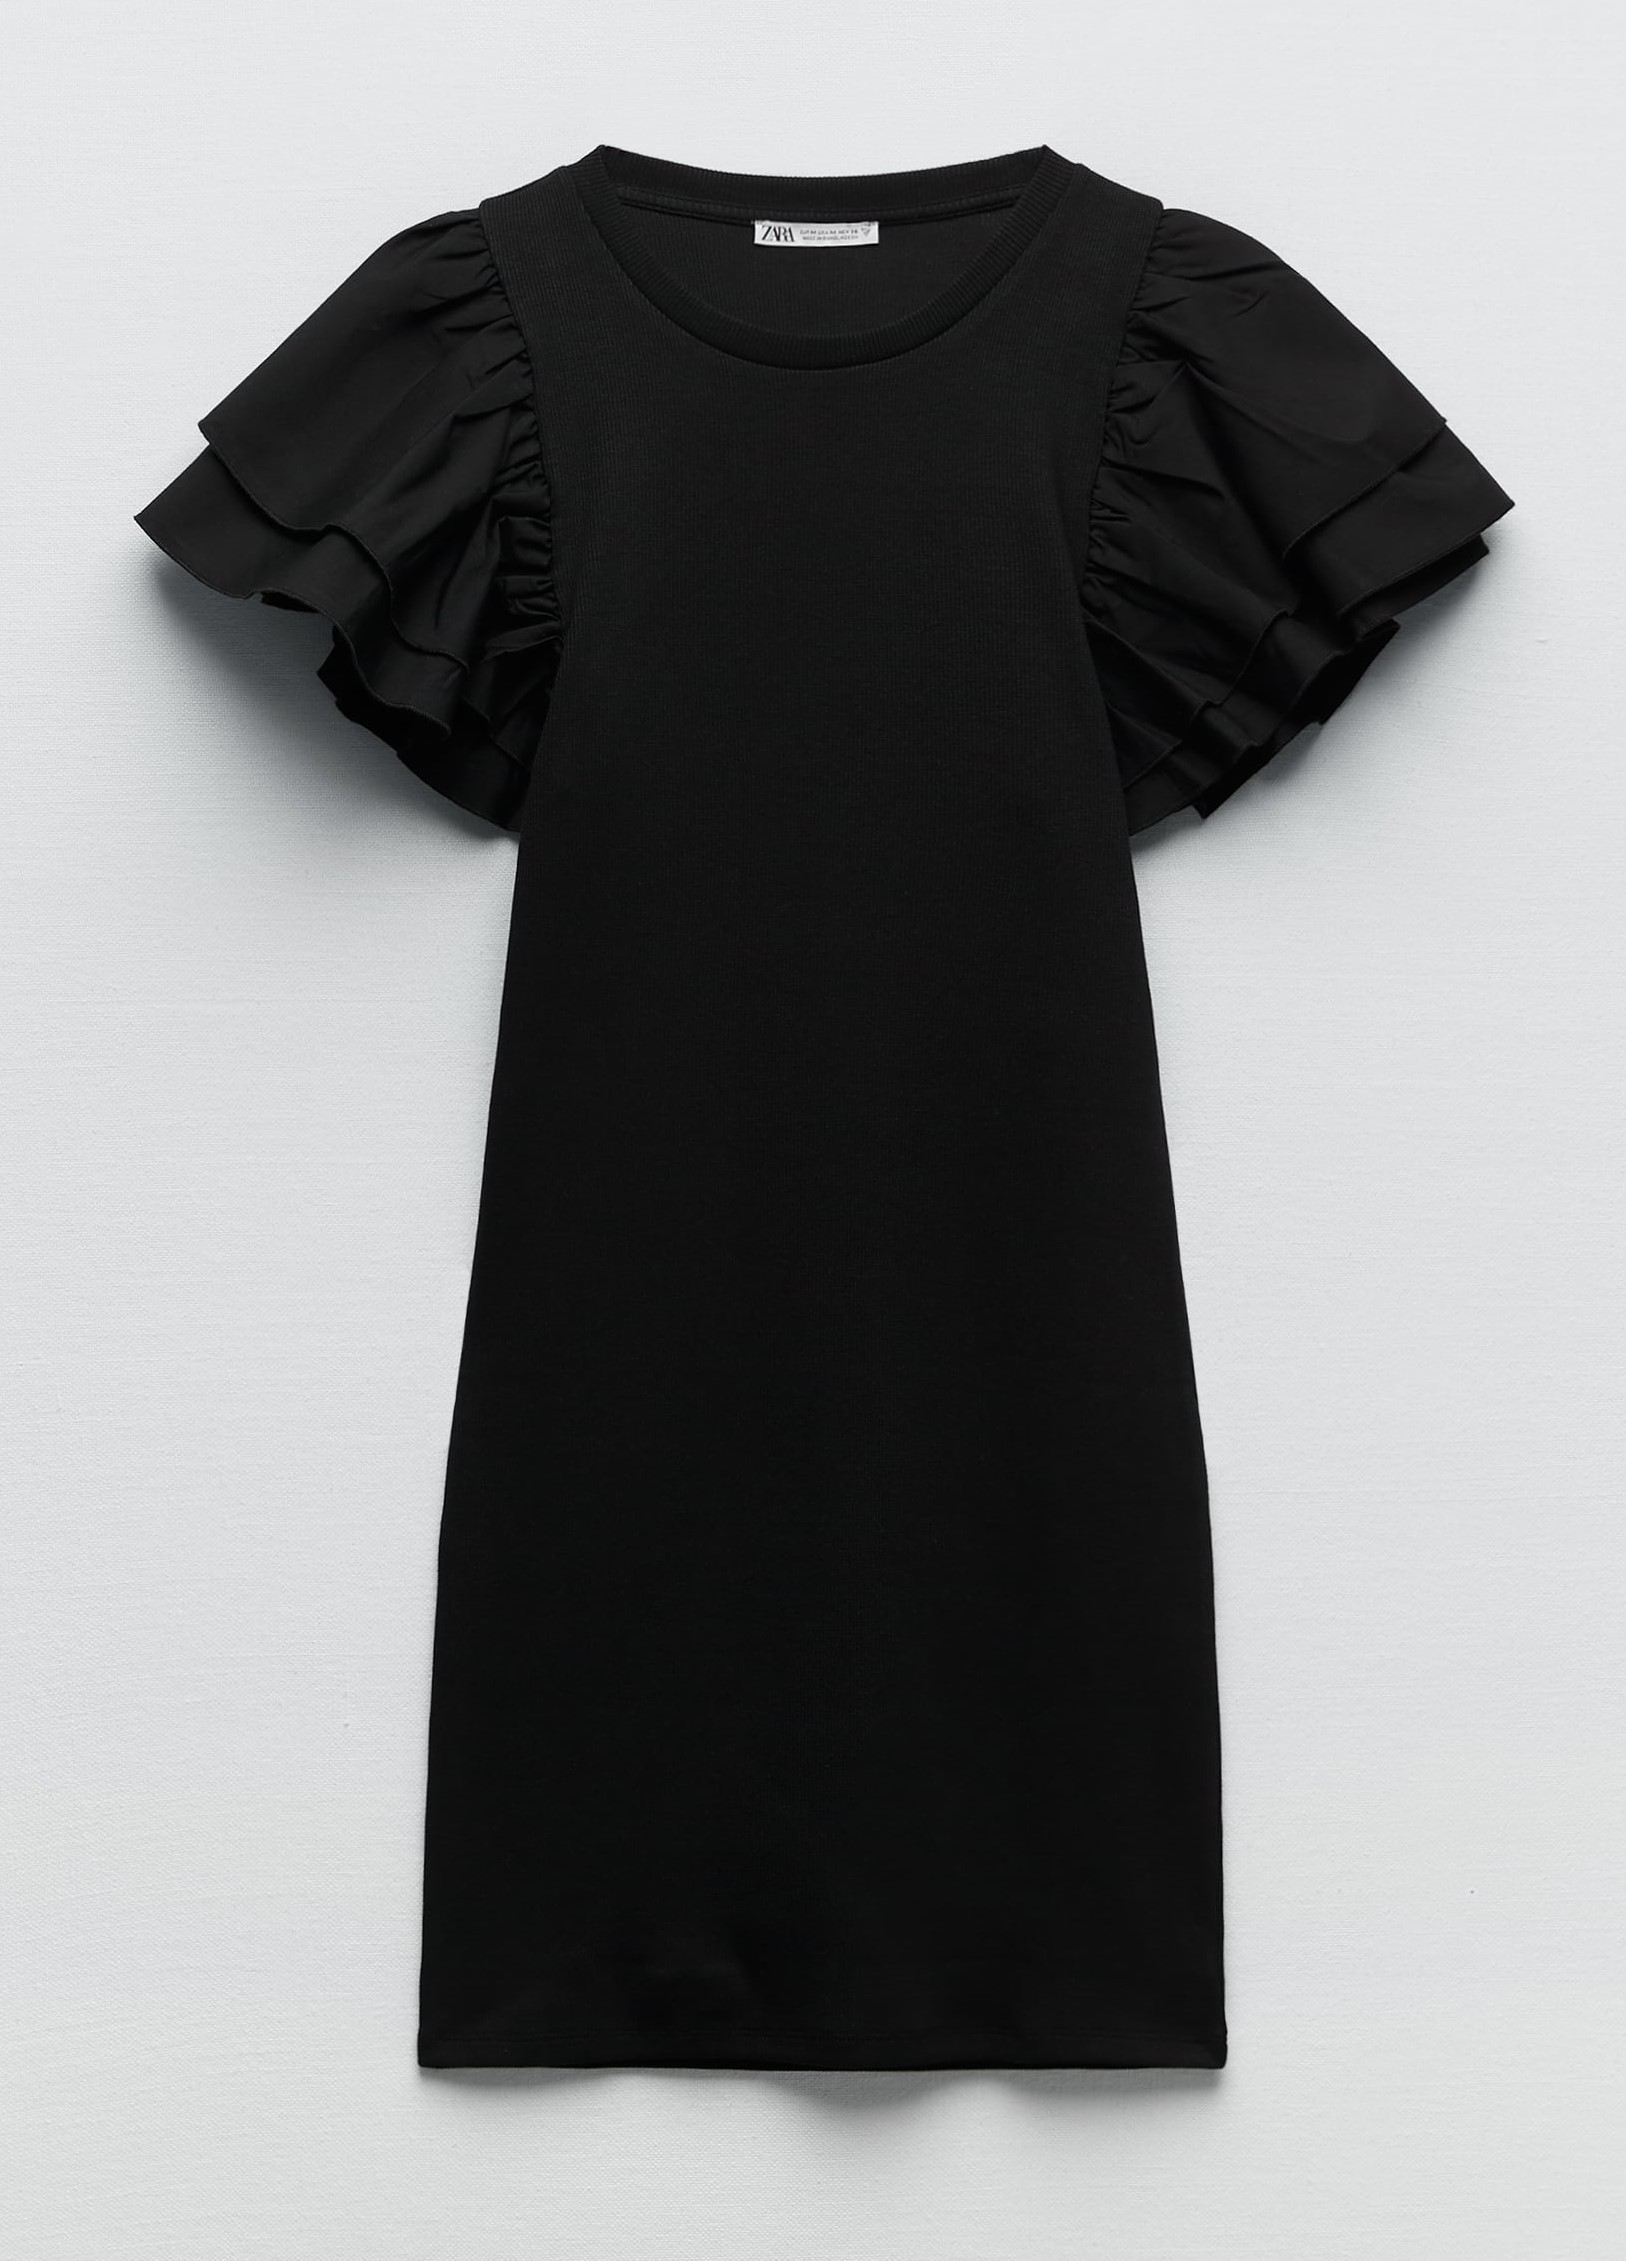 Vestido negro, de Zara.